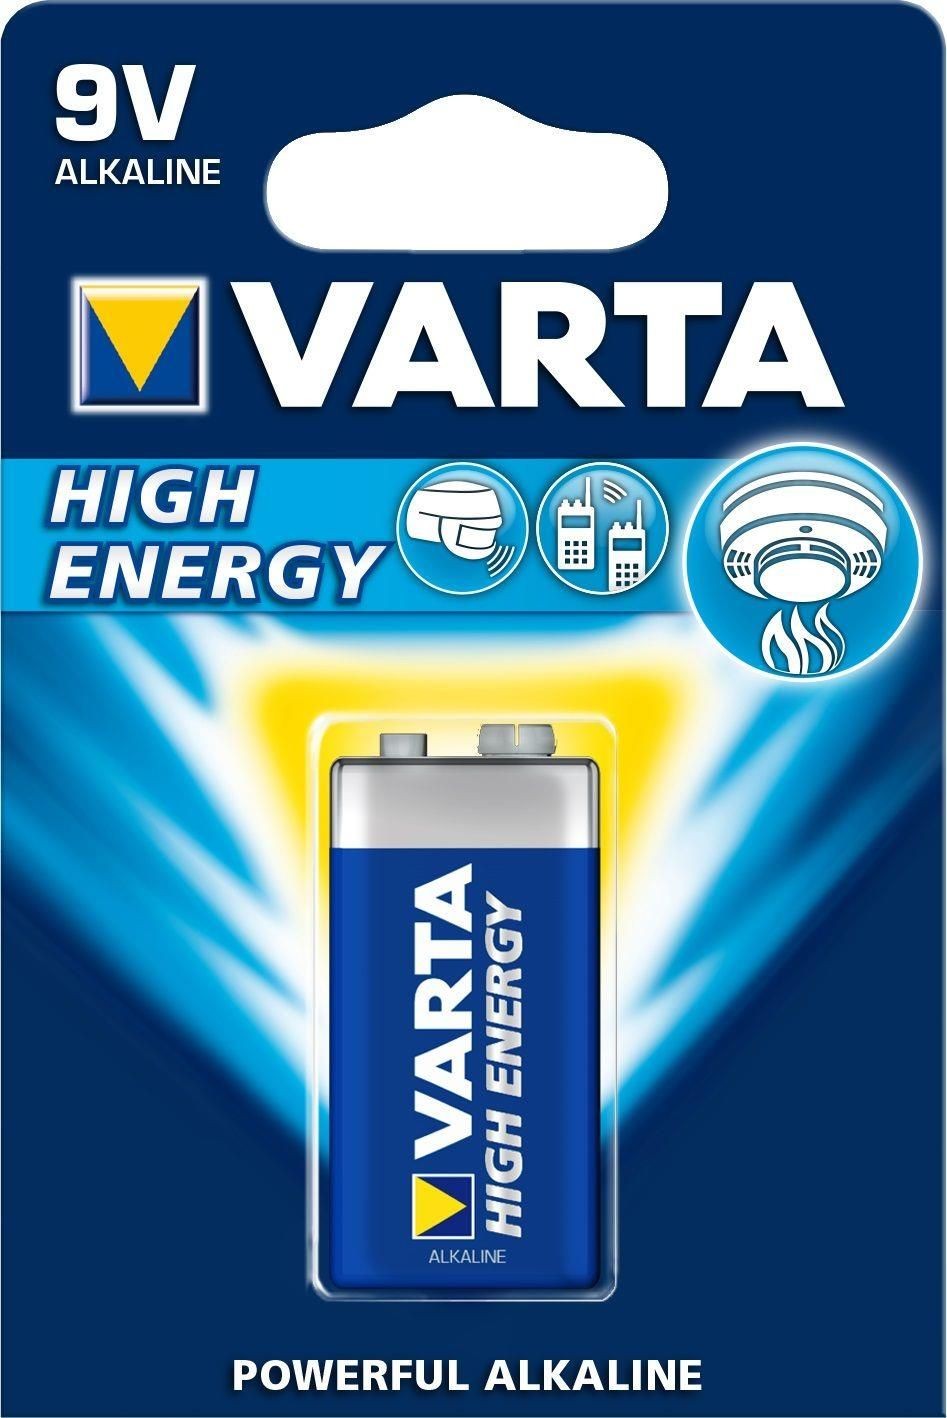 VARTA Baterie High Energy, E-Block, 9V 6LR61/PP3 - 1 szt